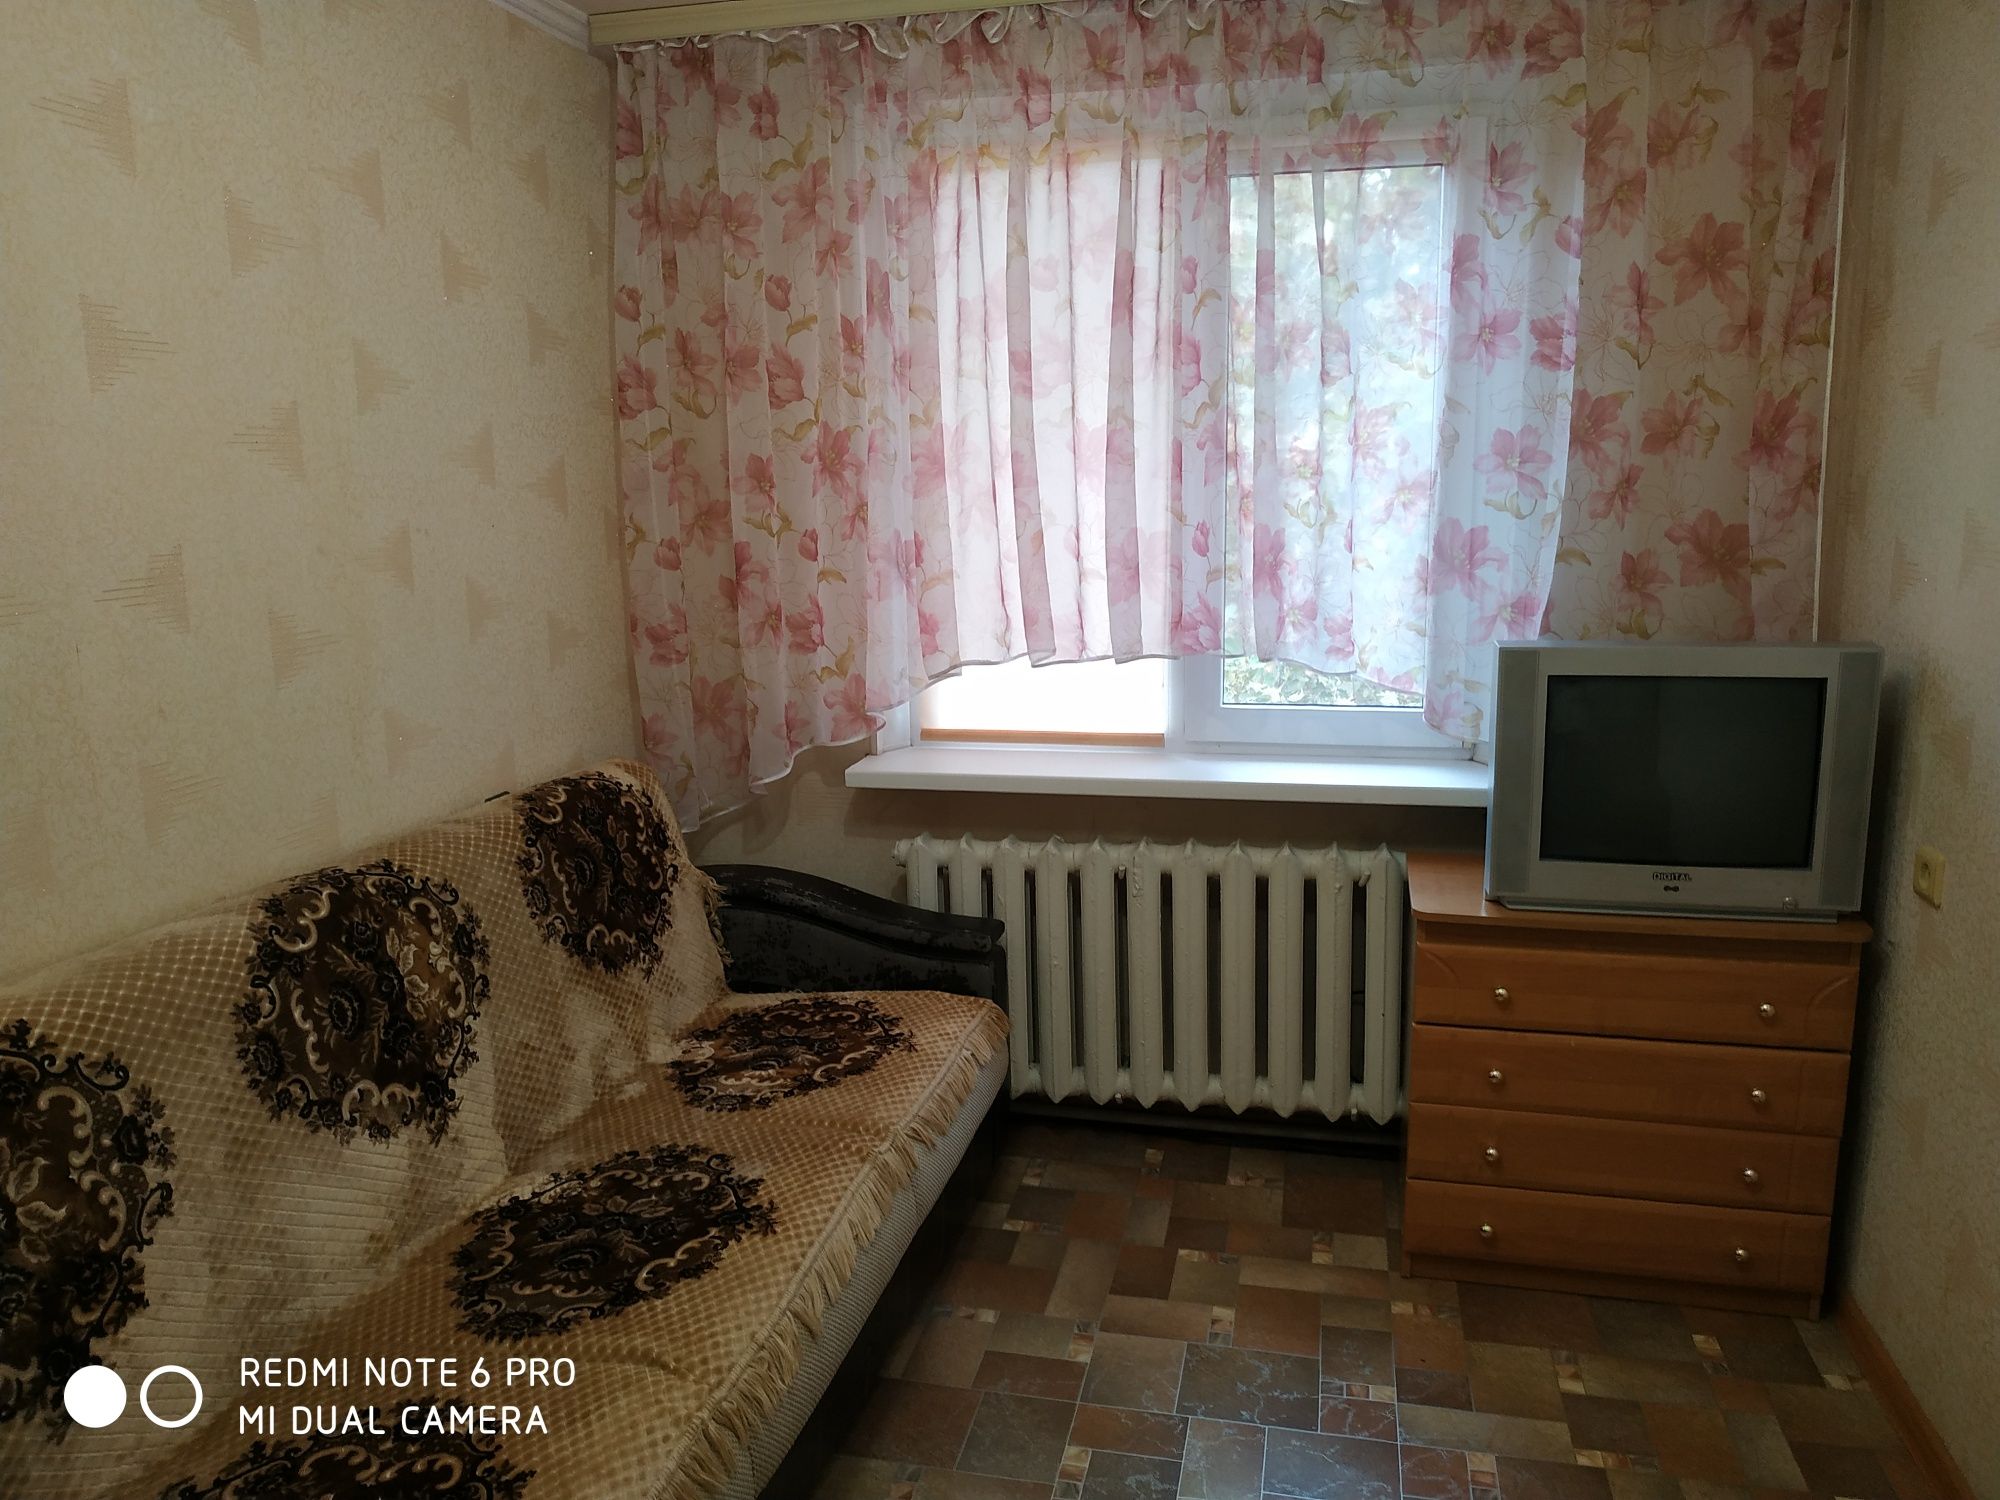 Срочная продажа!Квартира в отличном состоянии  на ул.Малиновского!!